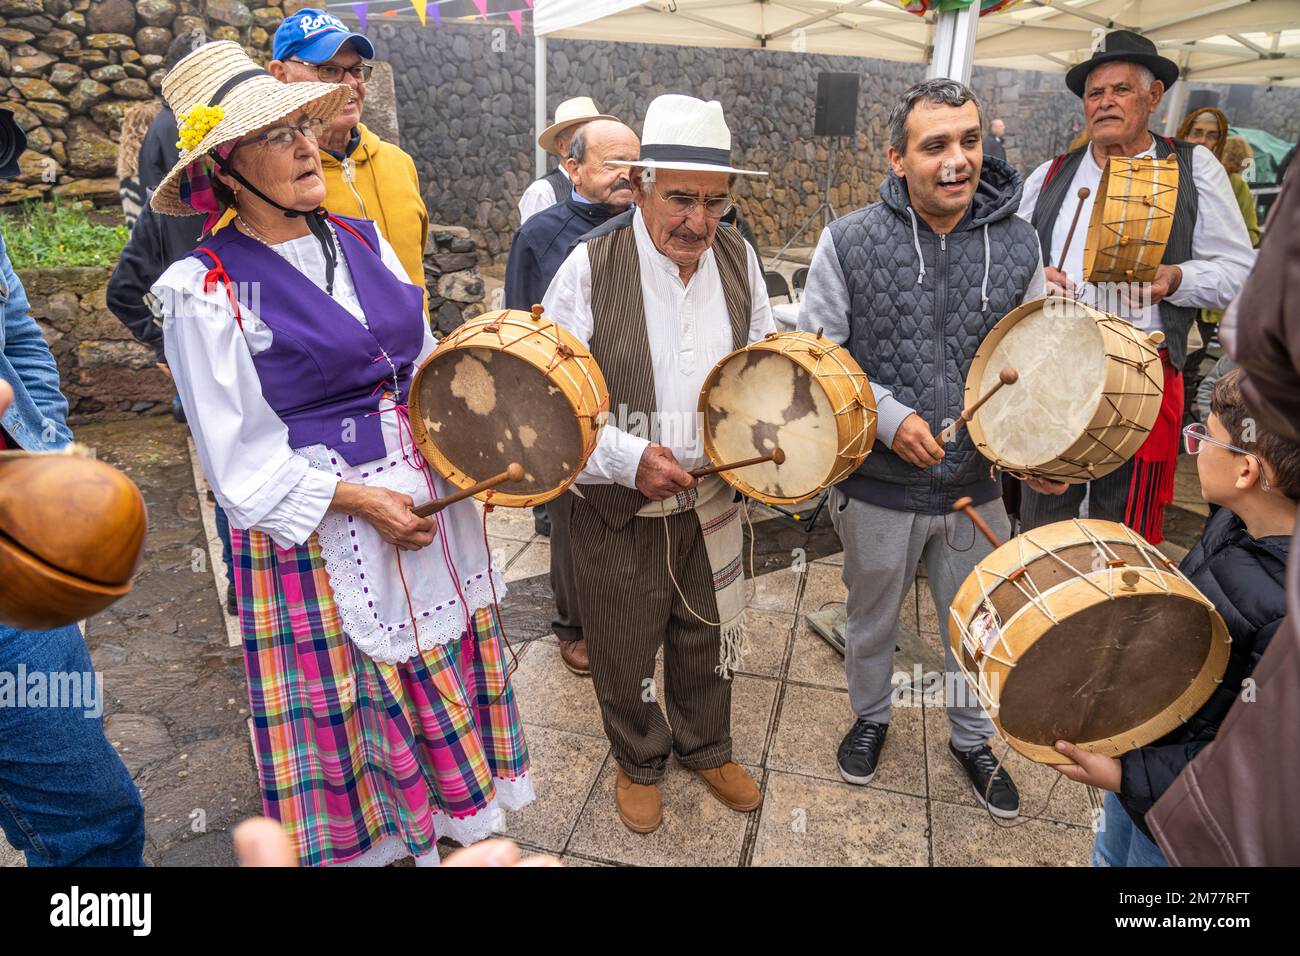 Traditionell gekleidete ältere Musiker während der Bajada in Arure, La Gomera, Kanarische Inseln, Spanien |  Traditional dressed elderly musicians dur Stock Photo